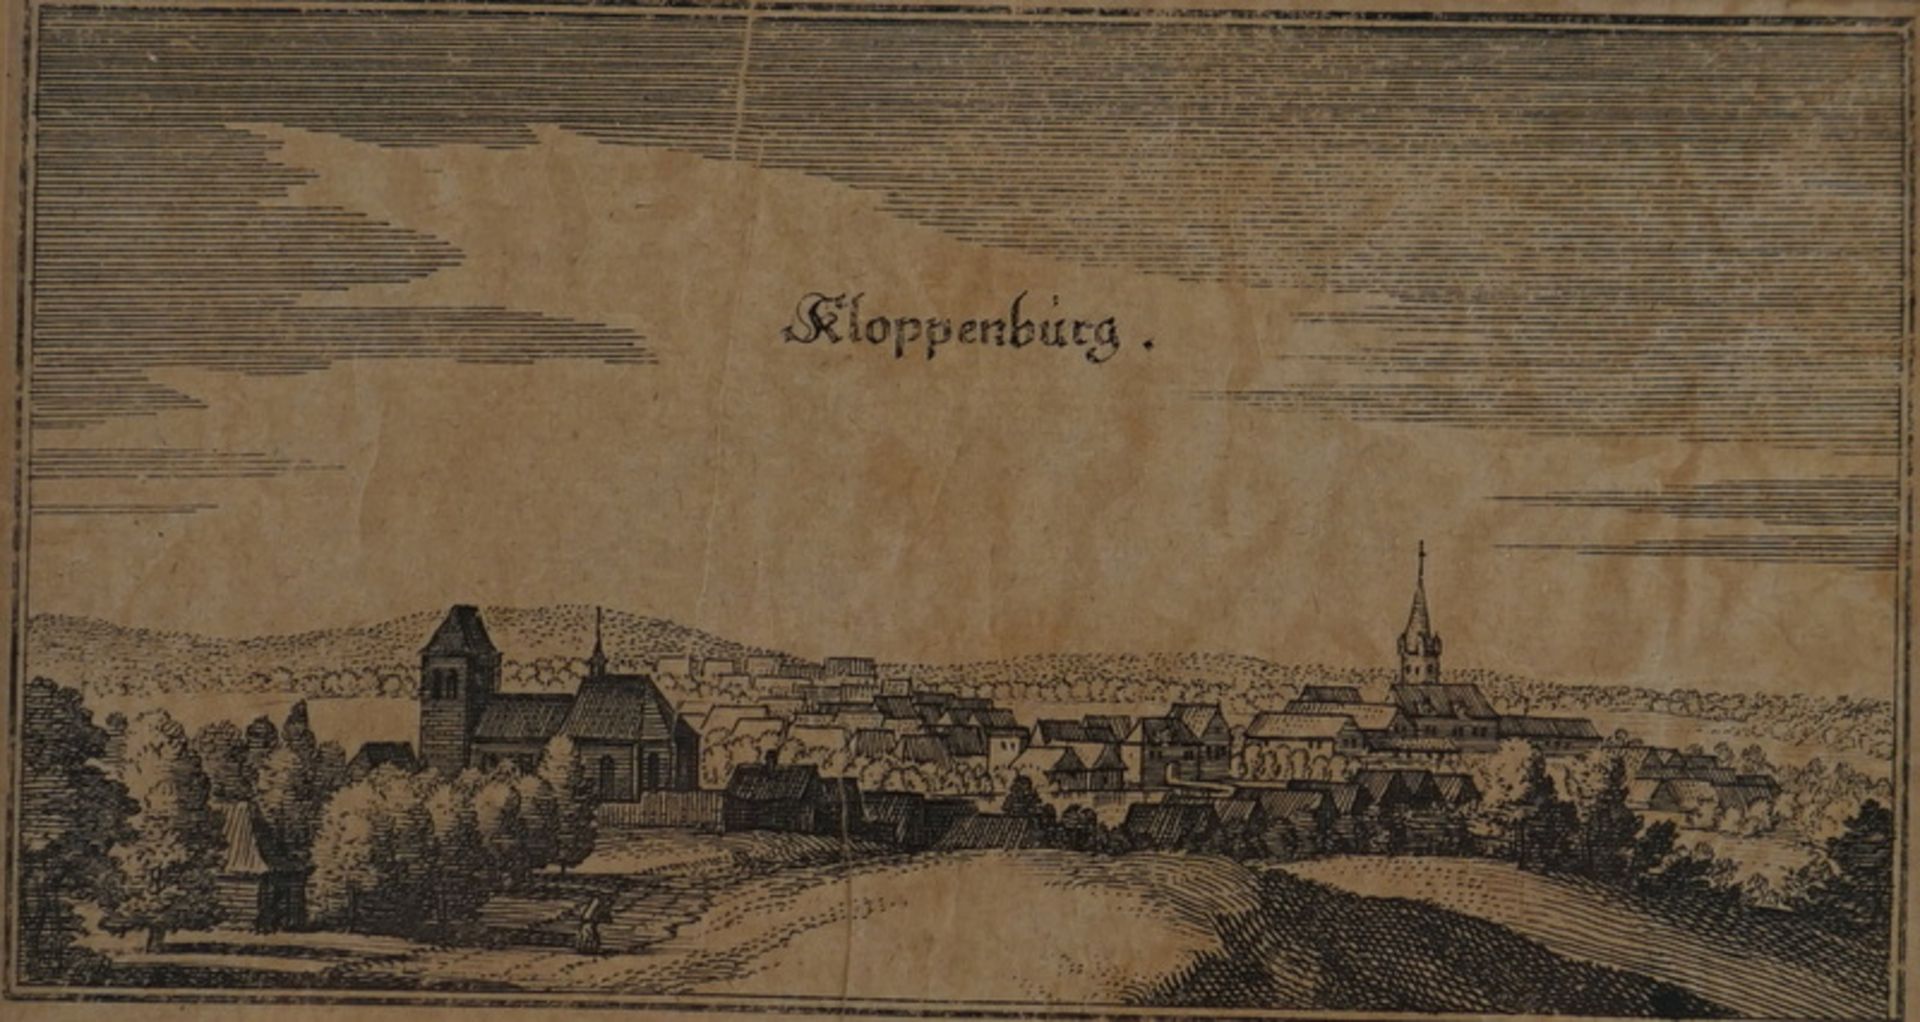 Merian, Matthäus: Drei Stadtansichten (Siegen, Cloppenburg, Werle), Merian, 17. Jh. - Bild 2 aus 2